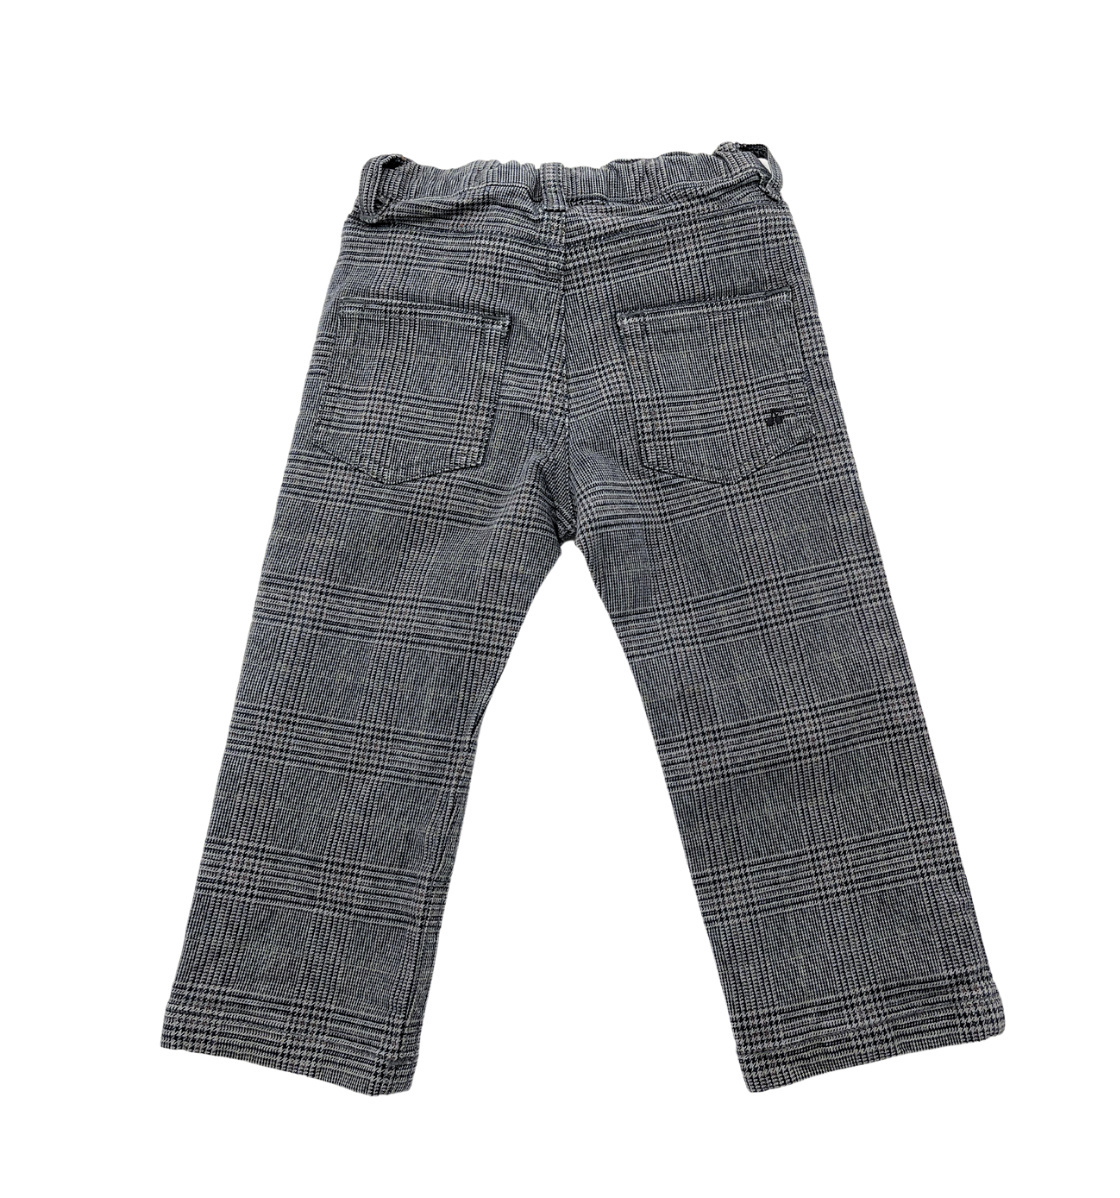 BONPOINT - Pantalon en jean à carreaux gris - 18 mois